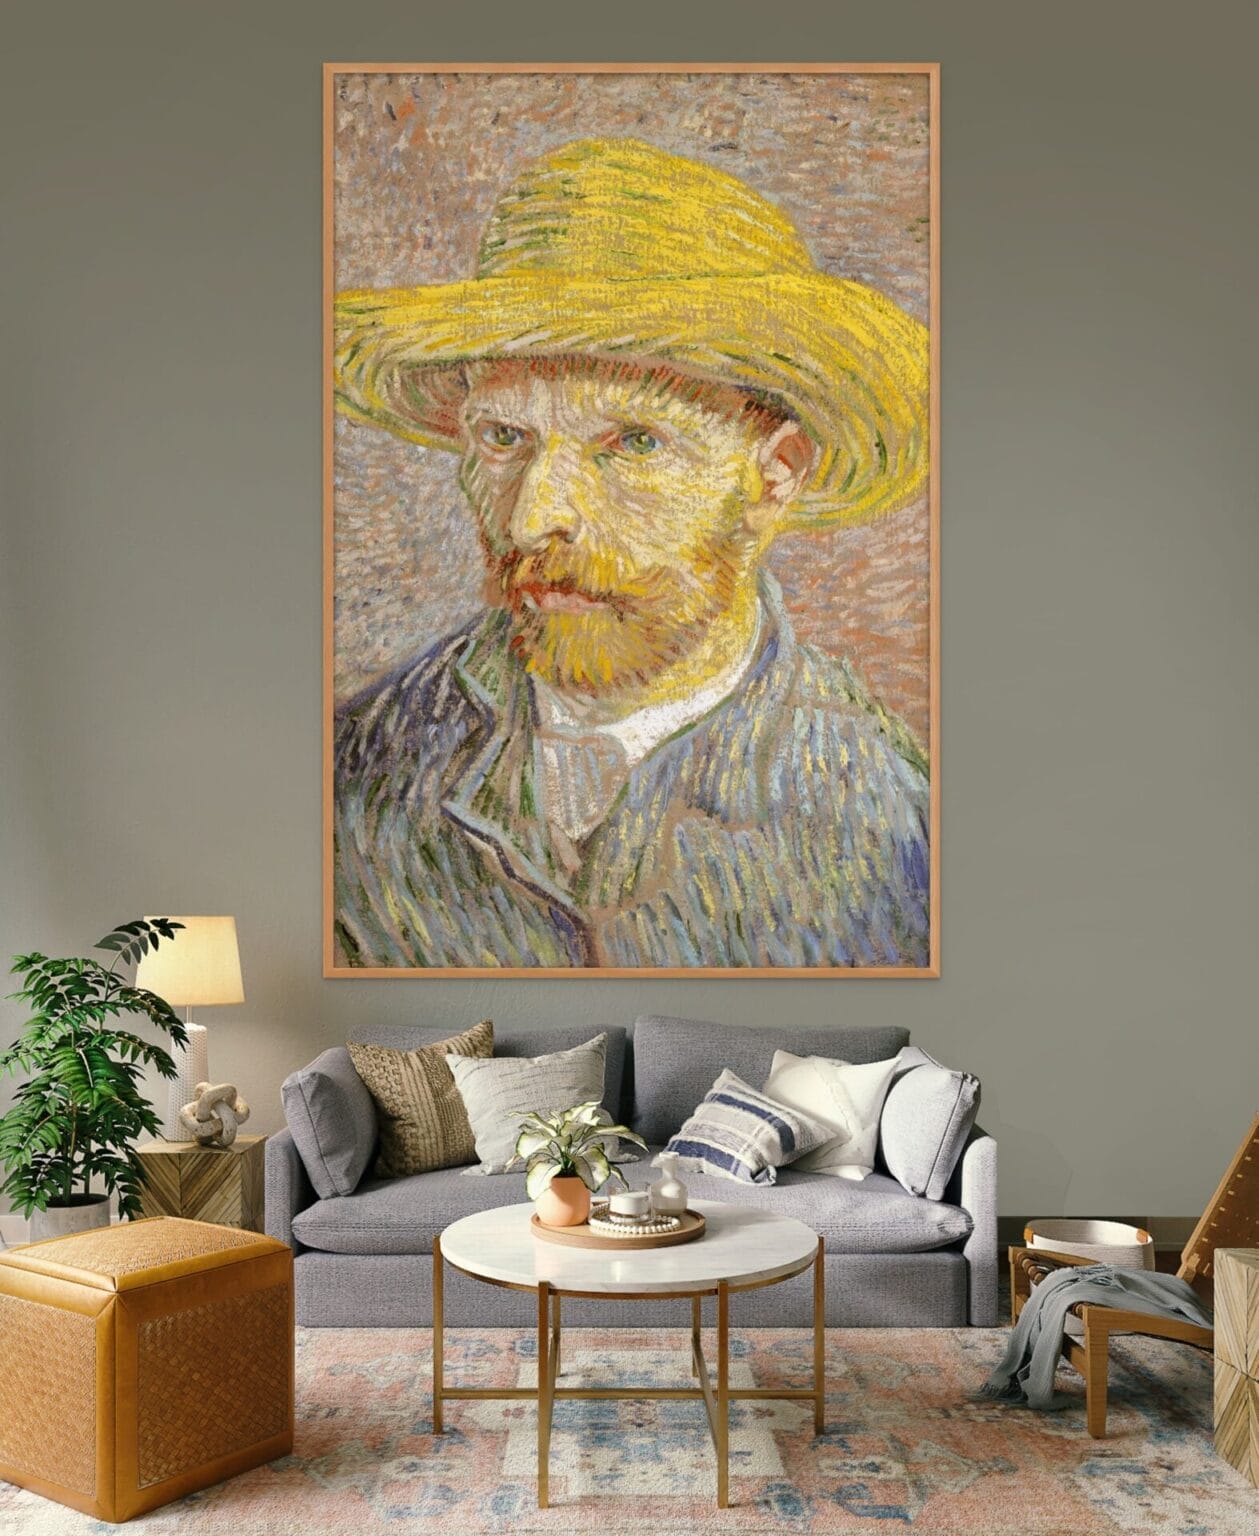 Cuadro Decorativo en Guatemala - VG0032_Vincent van Gogh_Autorretrato con sombrero de paja